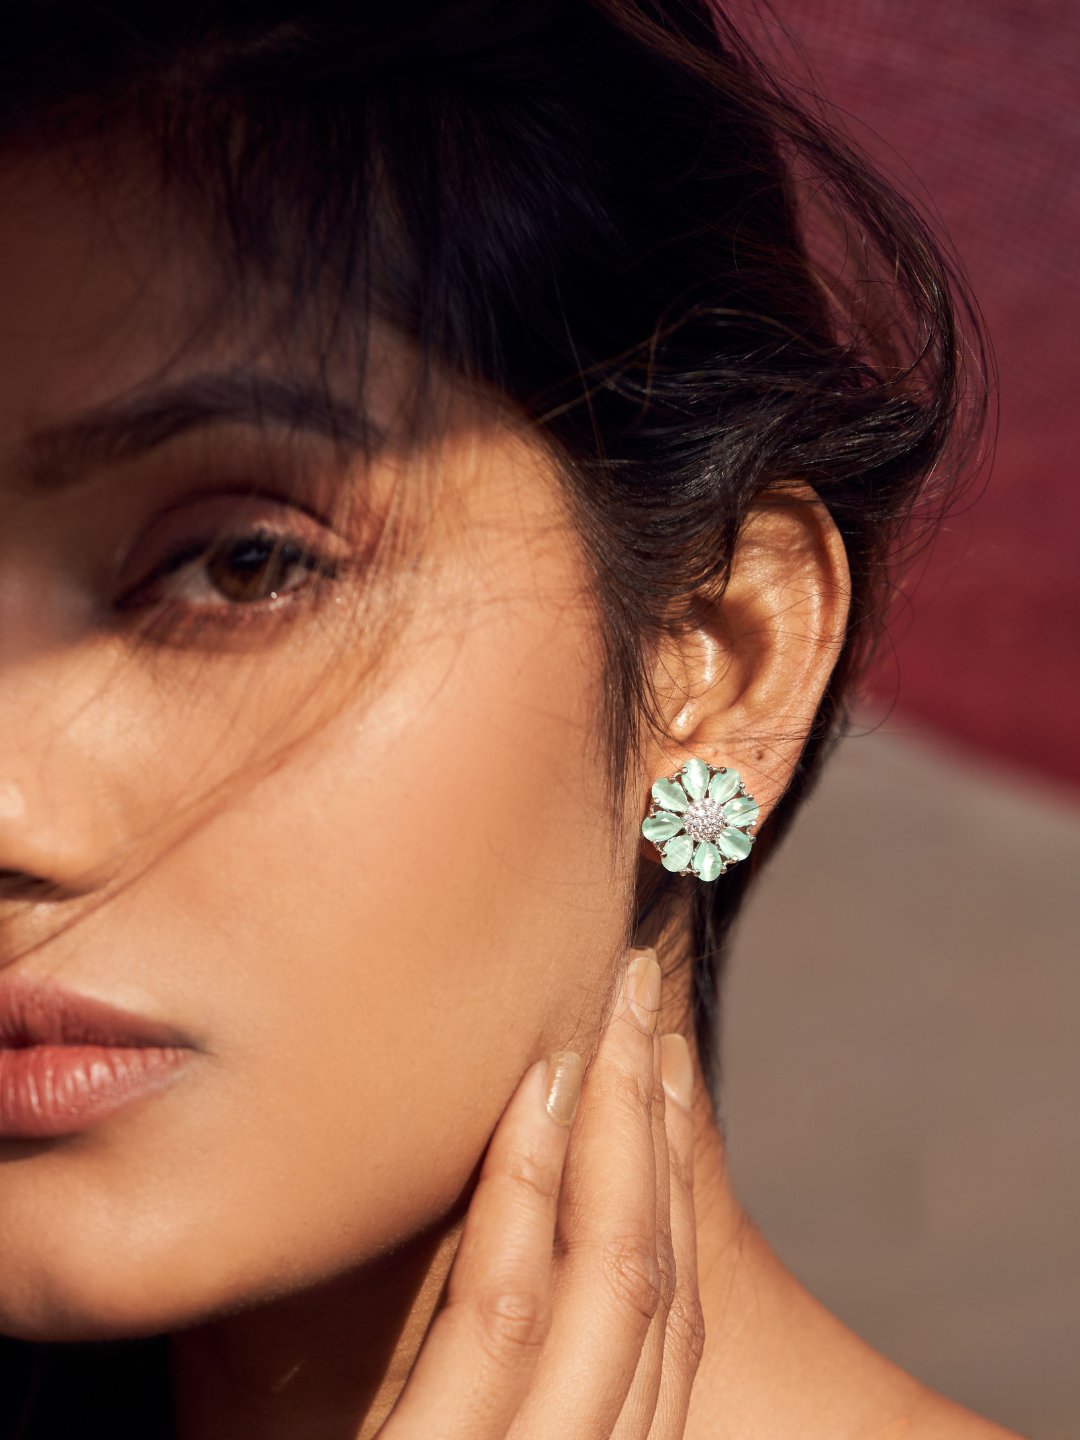 Buy Earrings for Girls & Women Online in India - Zeraki Jewels